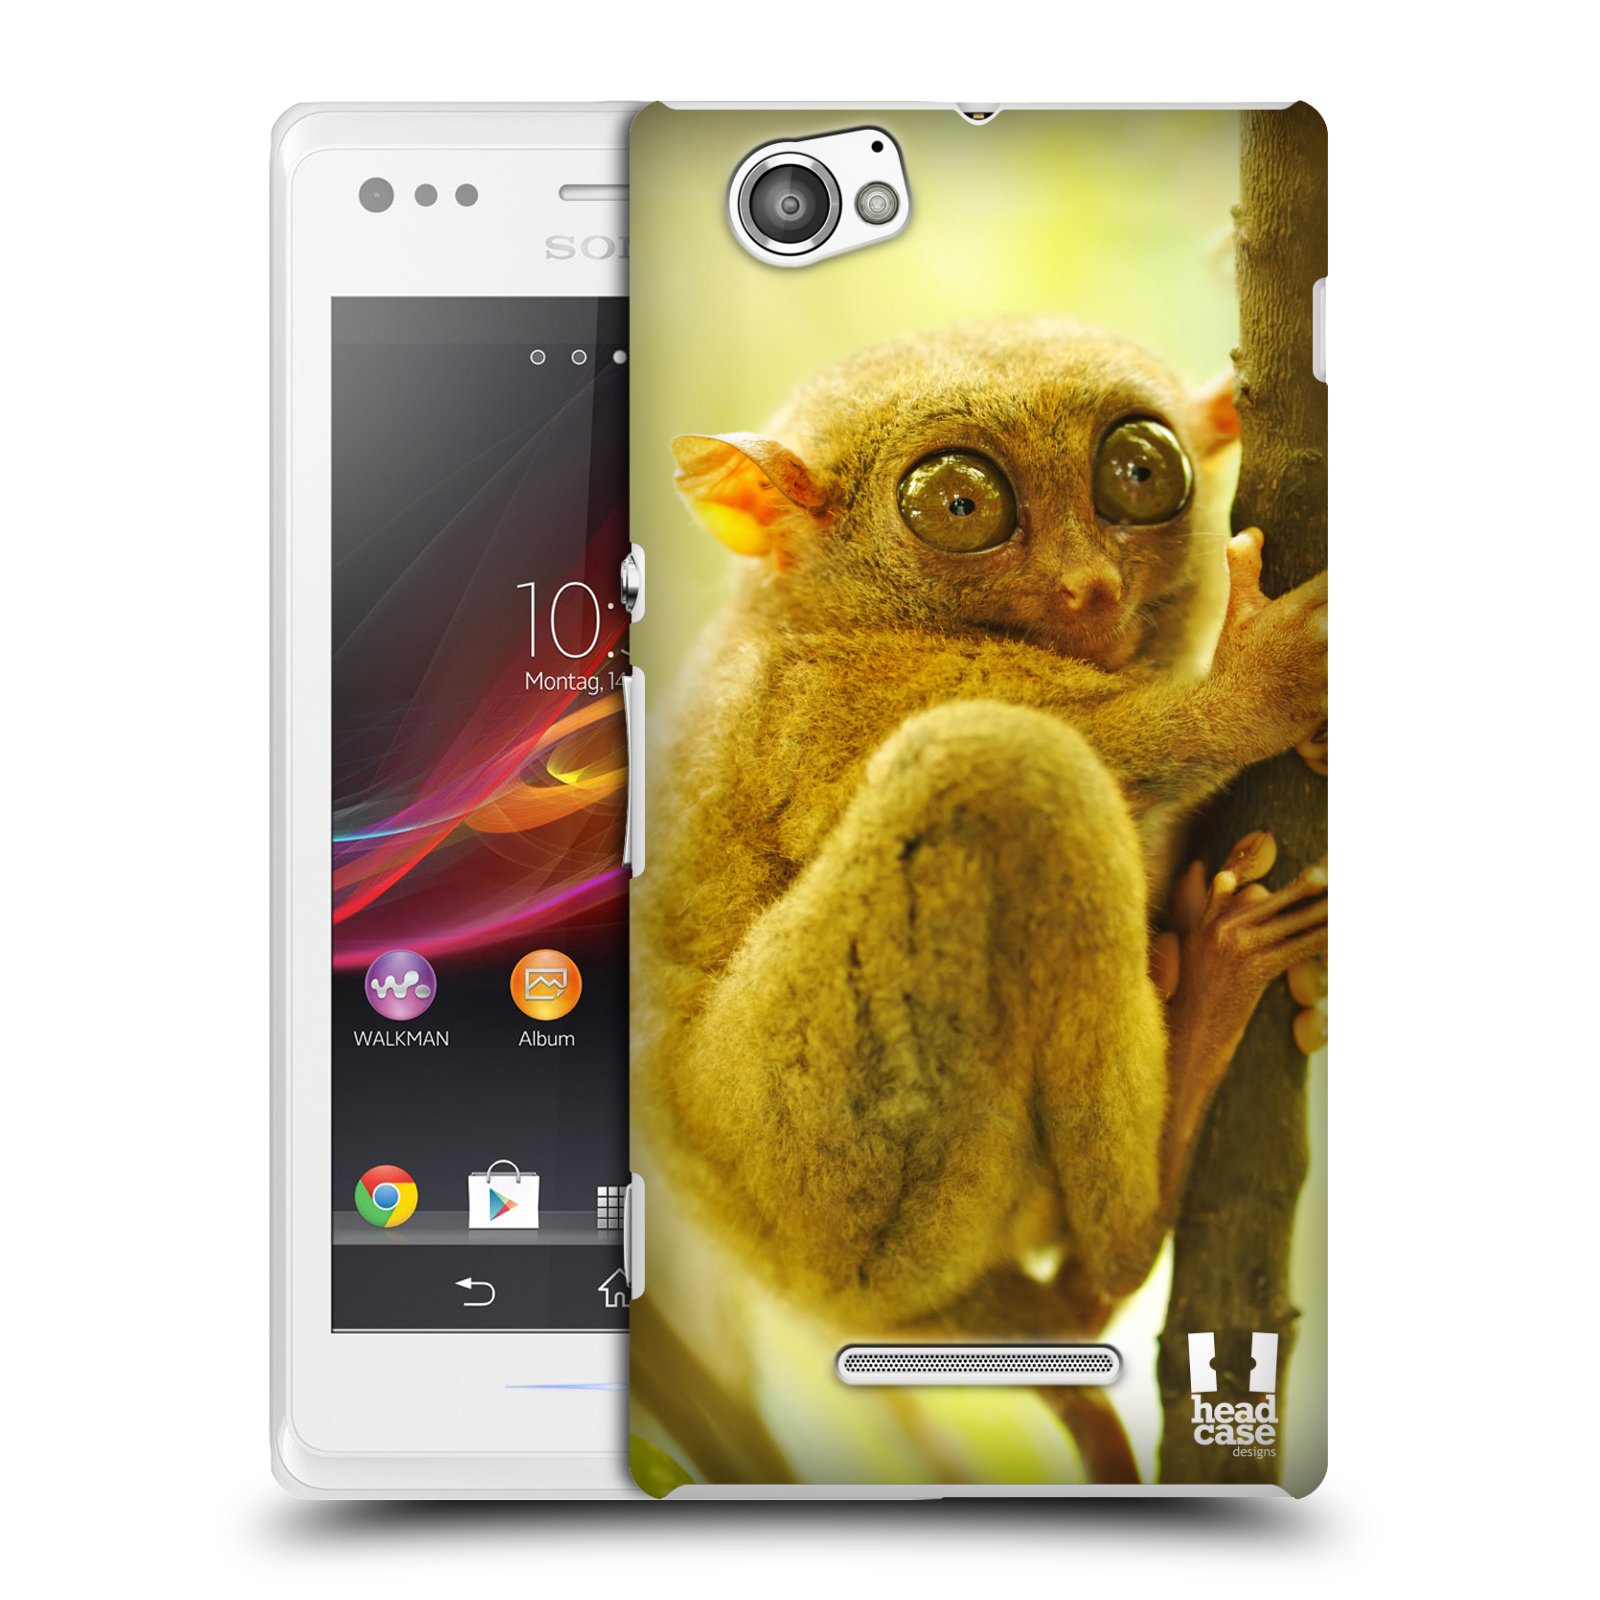 HEAD CASE plastový obal na mobil Sony Xperia M vzor slavná zvířata foto Nártoun